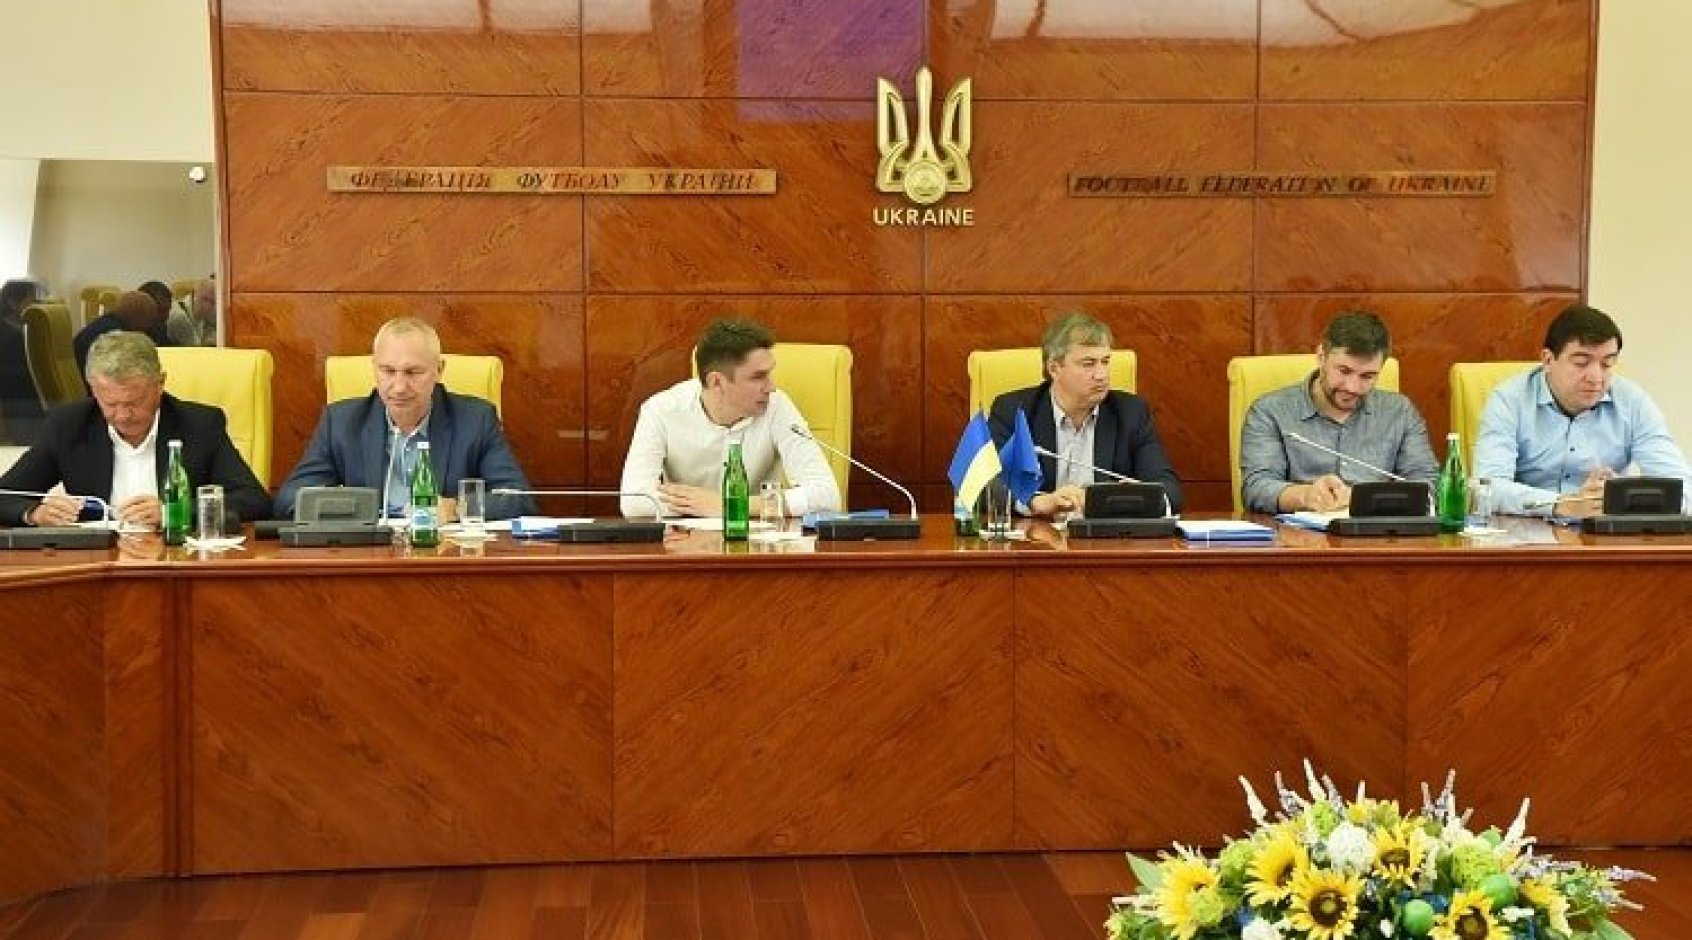 Відбулося розширене засідання Комітету стратегічного розвитку футболу, на якому було розглянуто низку важливих питань